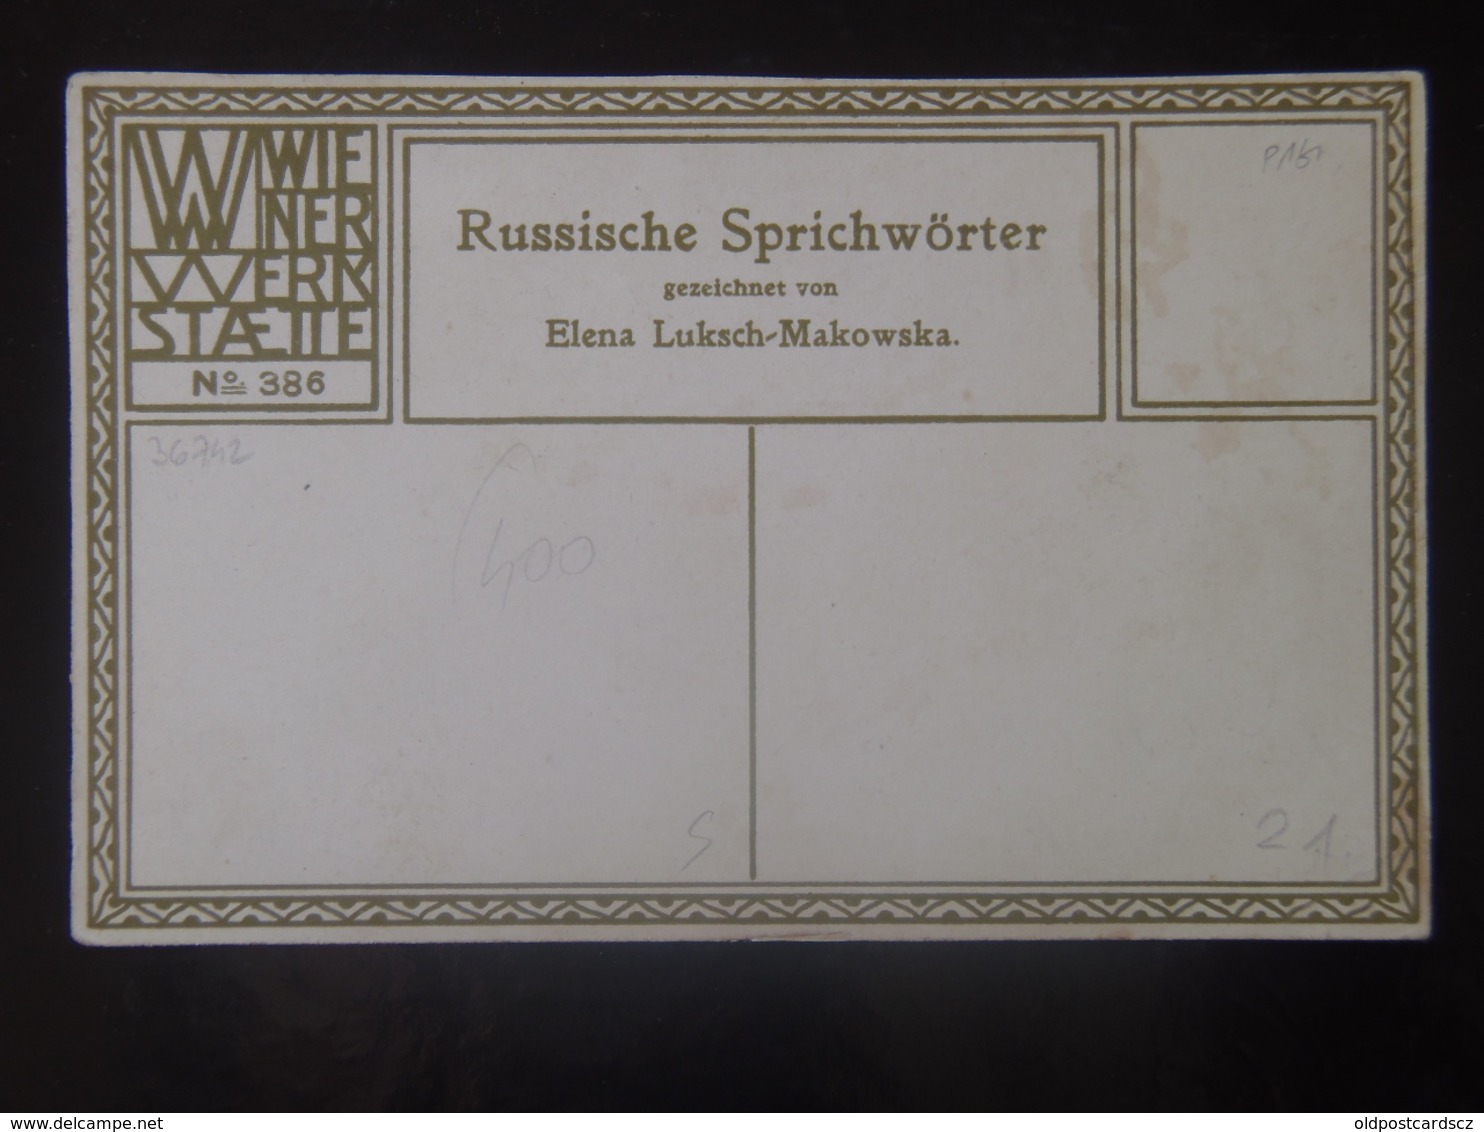 21  Wiener Werkstaetten Werkstatte Werskstaette WW 386 ORIGINAL Elena Luksch-Makowska Luksch - Makowska 1911 Russia - Wiener Werkstätten